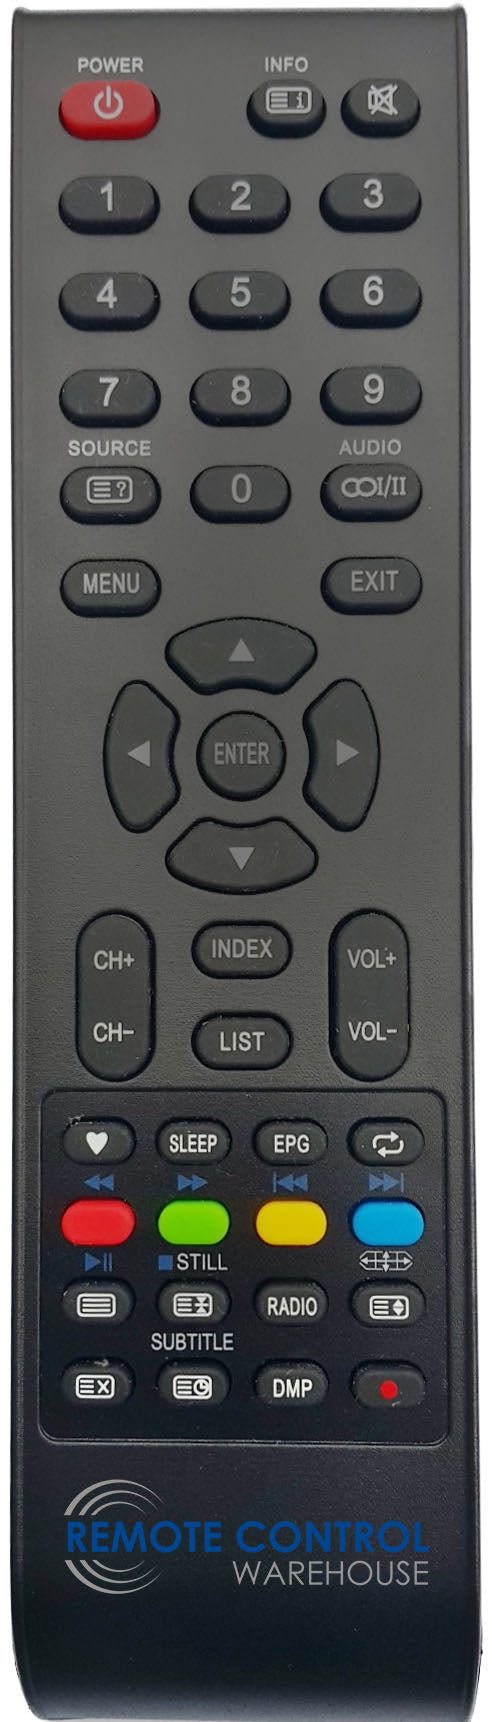 CHIQ L40H4 TV Remote Control